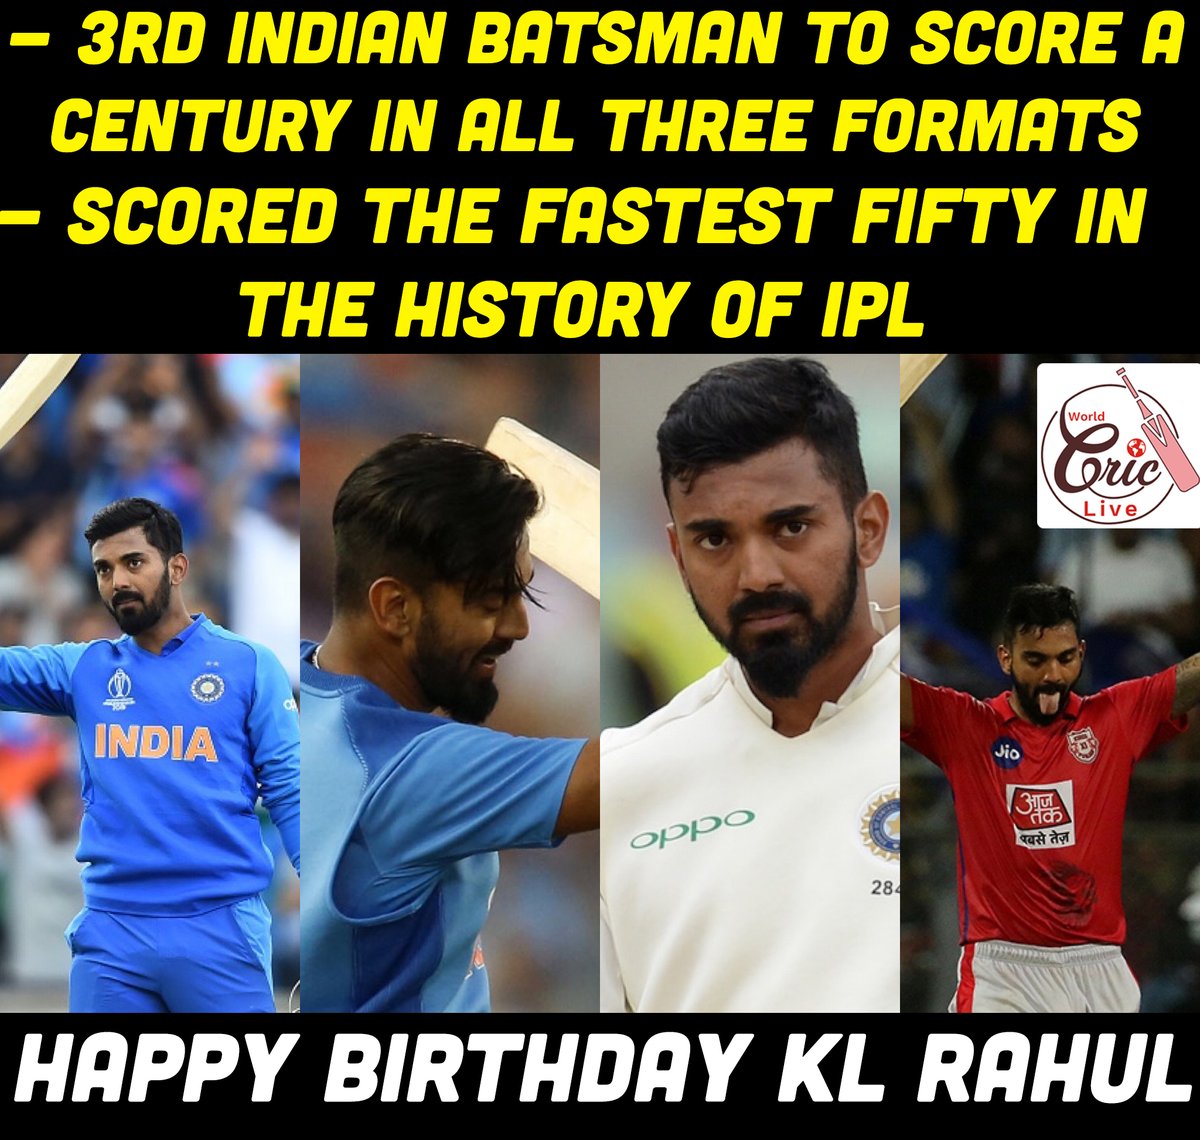 Happy Birthday KL Rahul 🎂

#HappyBirthdayKLRahul #Cricket #KLRahul #HBDKLRahul